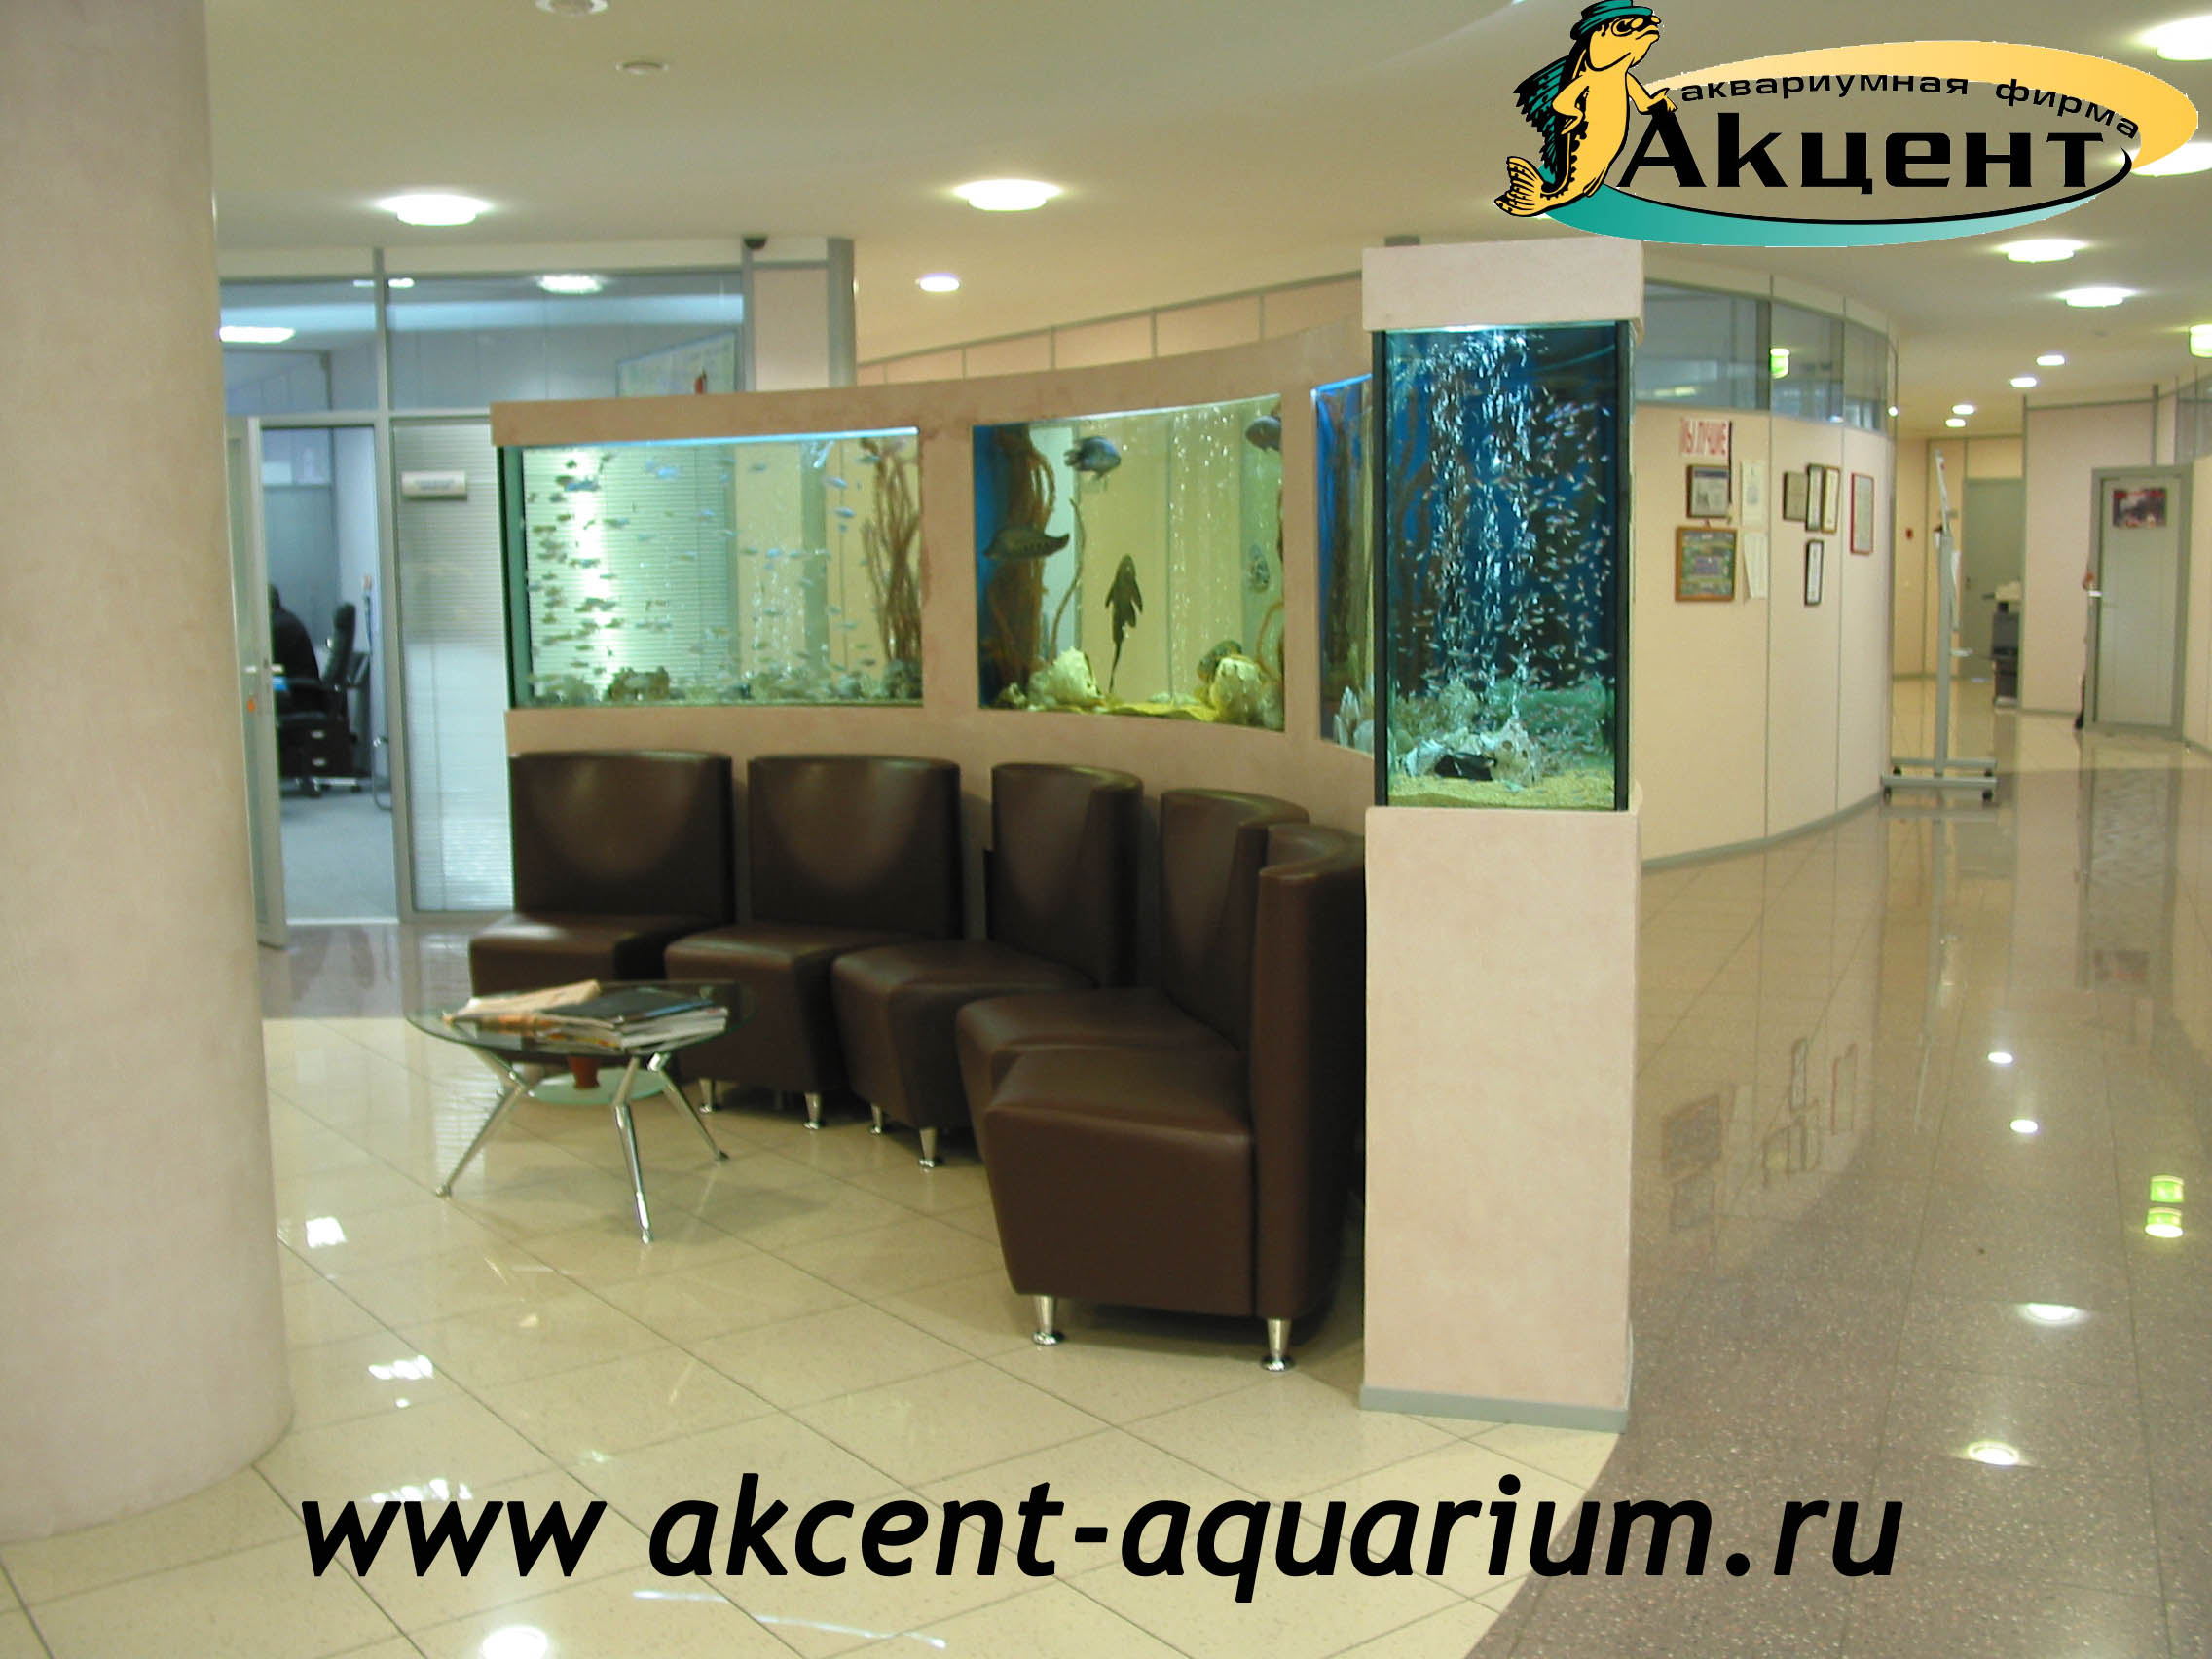 Акцент-Аквариум, 3 аквариума сложной формы